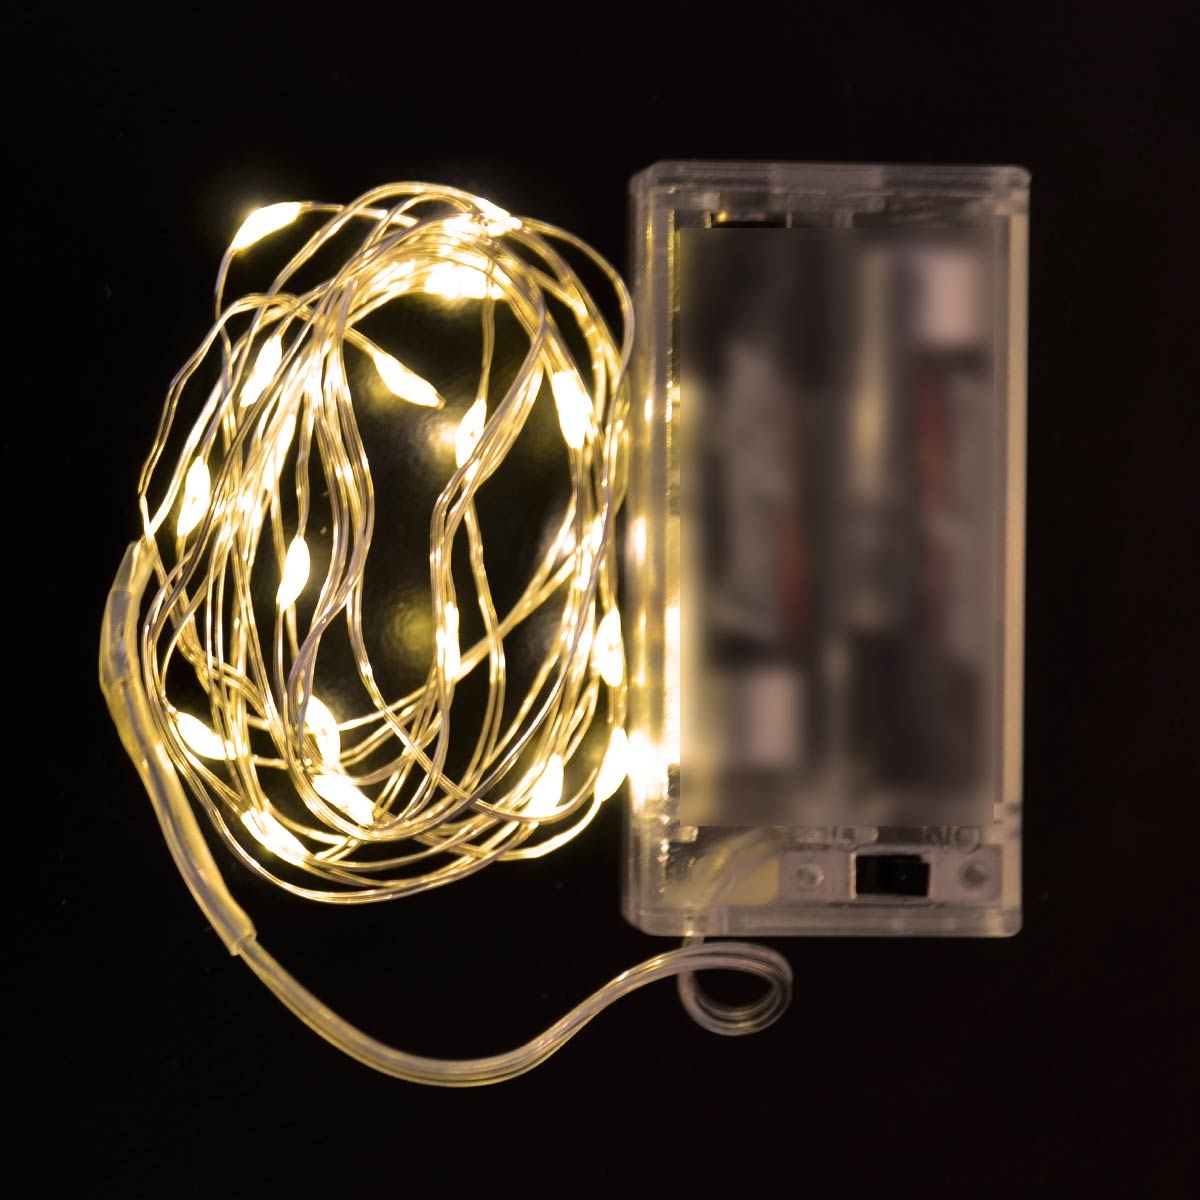  ضوء الديكور - اللون أصفر - موفر للطاقة - الطول 2 متر - تعمل على البطارية 